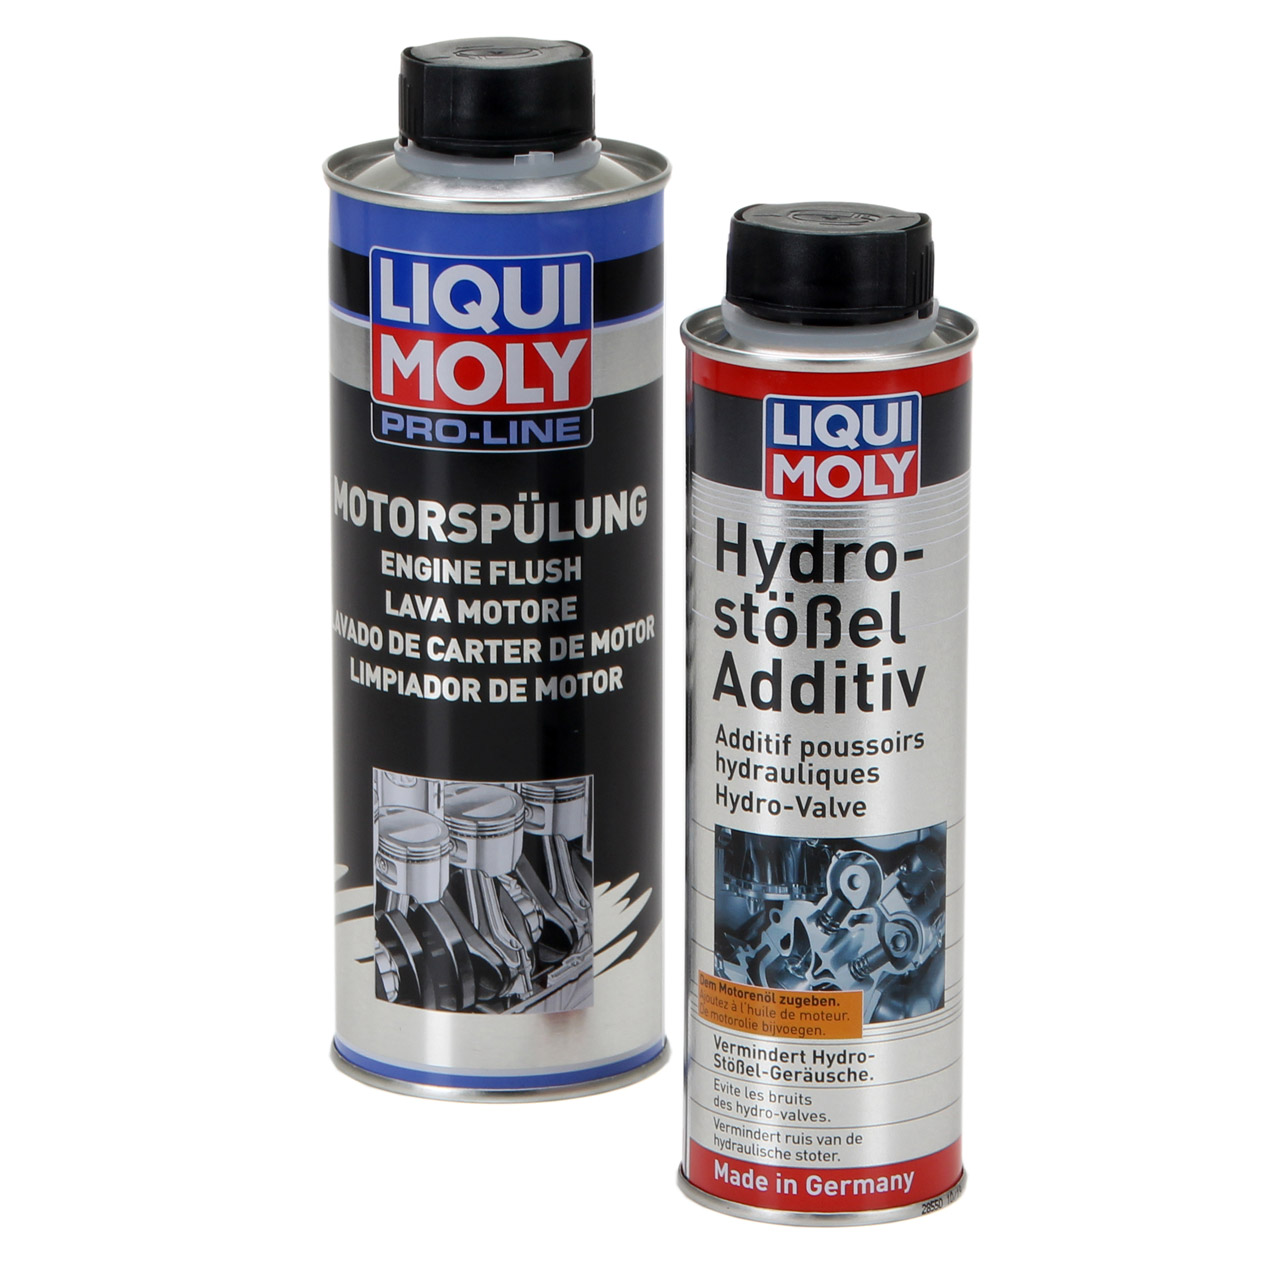 LIQUI MOLY 1009+2427 Hydro Stößel Additiv+Motorspülung Reiniger